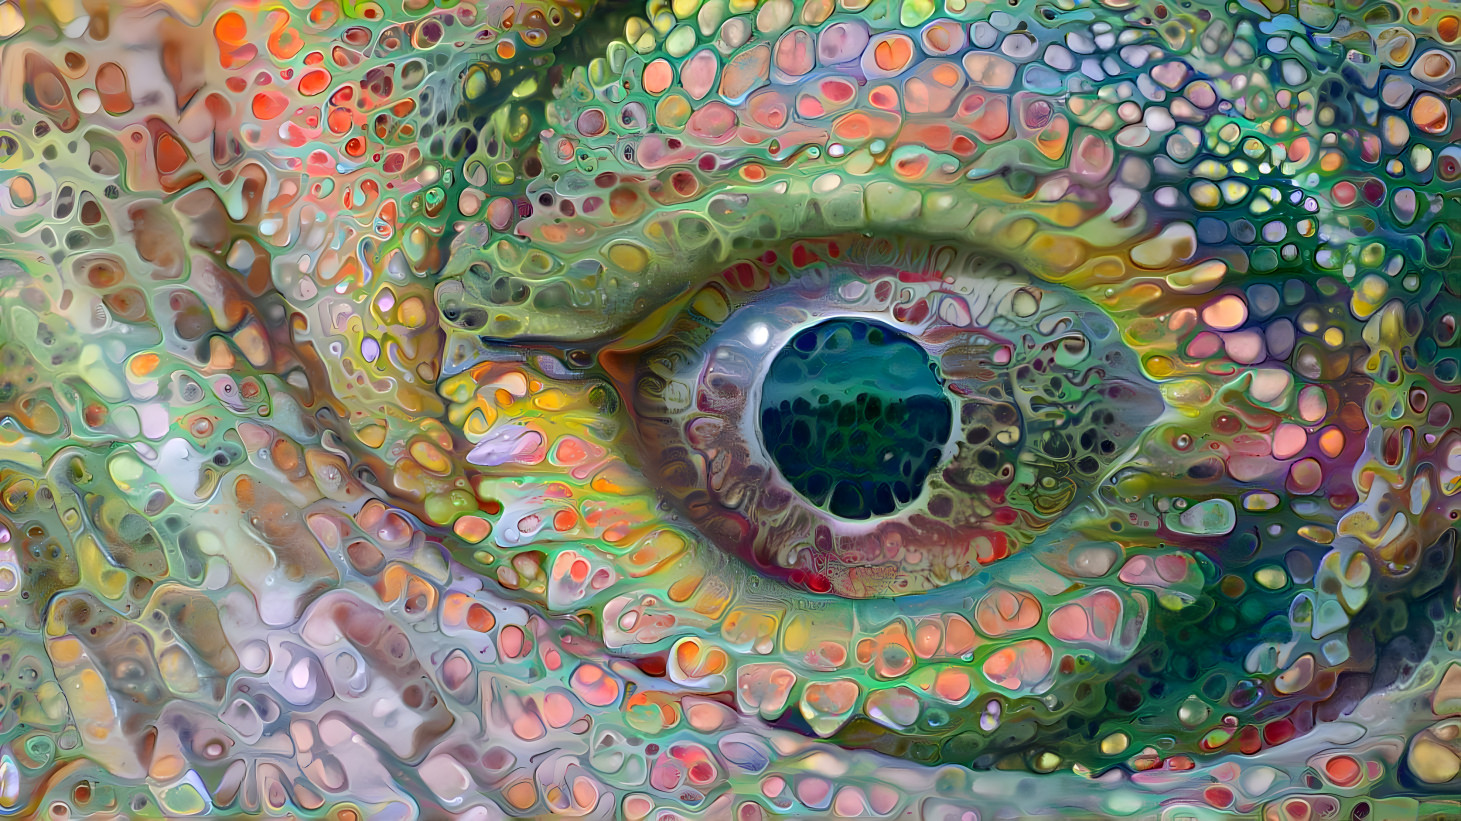 Eye of the Lizard